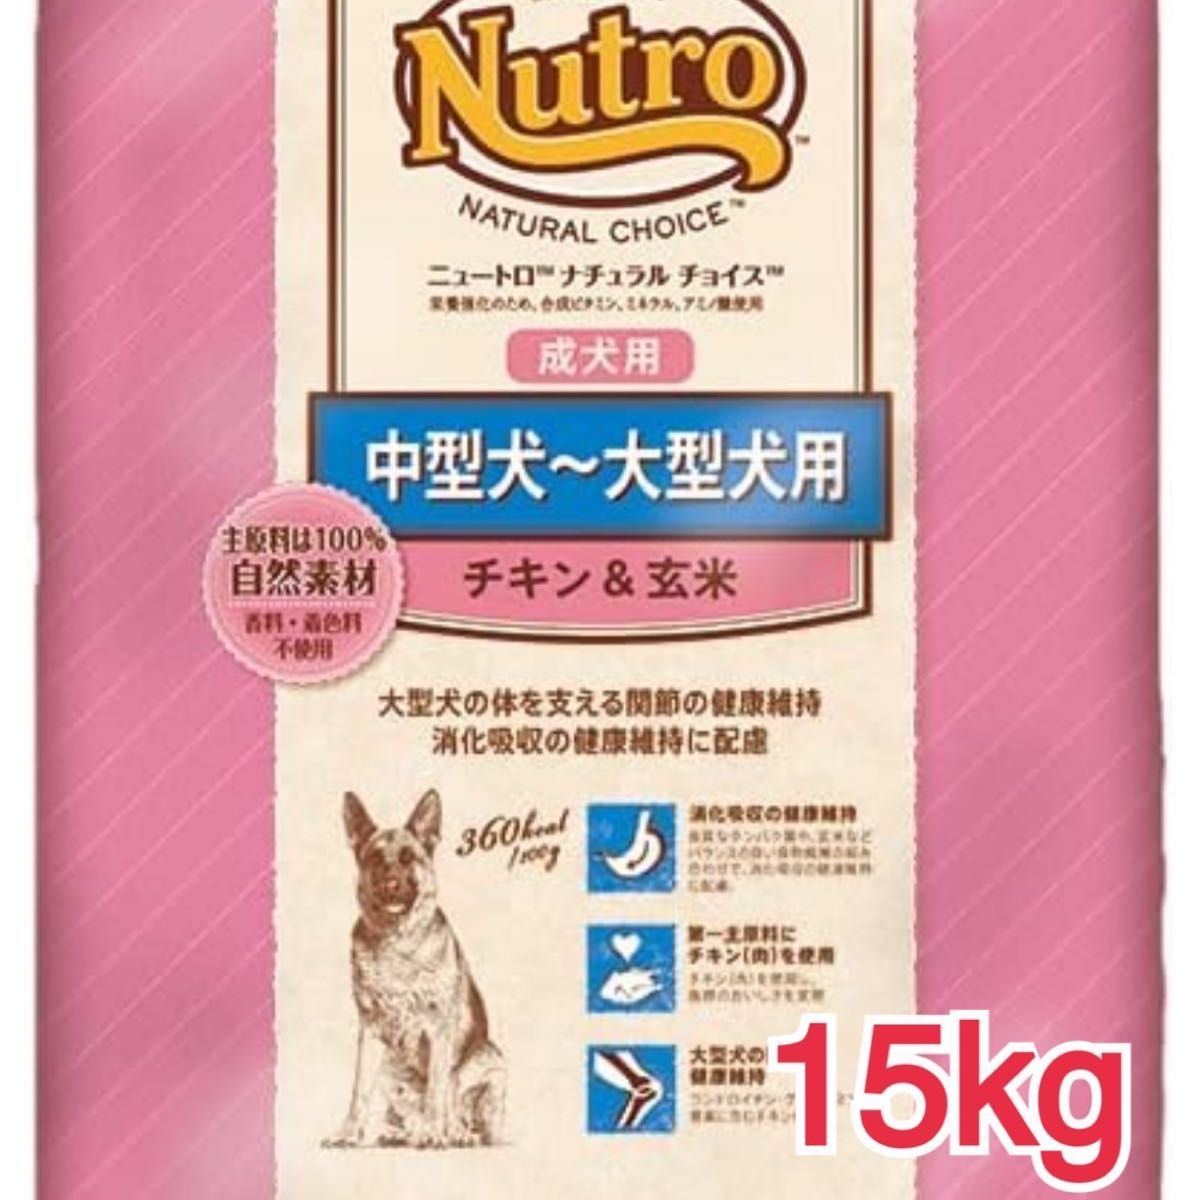 ニュートロナチュラルチョイスチキン 玄米小型成犬用19kg - ペット用品